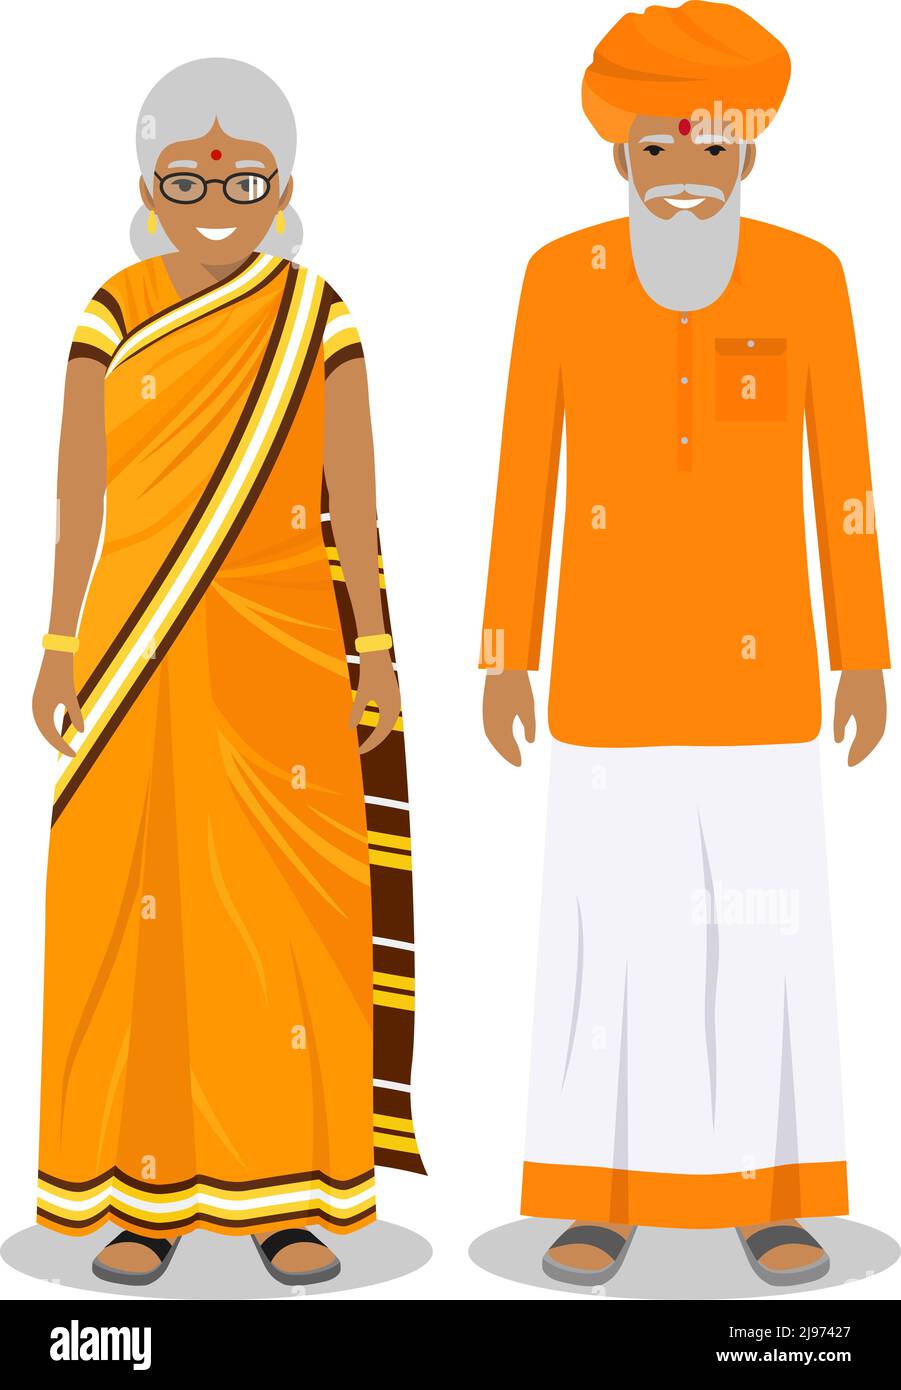 Detaillierte Darstellung von stehenden alten indianern in der traditionellen nationalen indischen Kleidung isoliert auf weißem Hintergrund in flachem Stil. Senior ind Stock Vektor